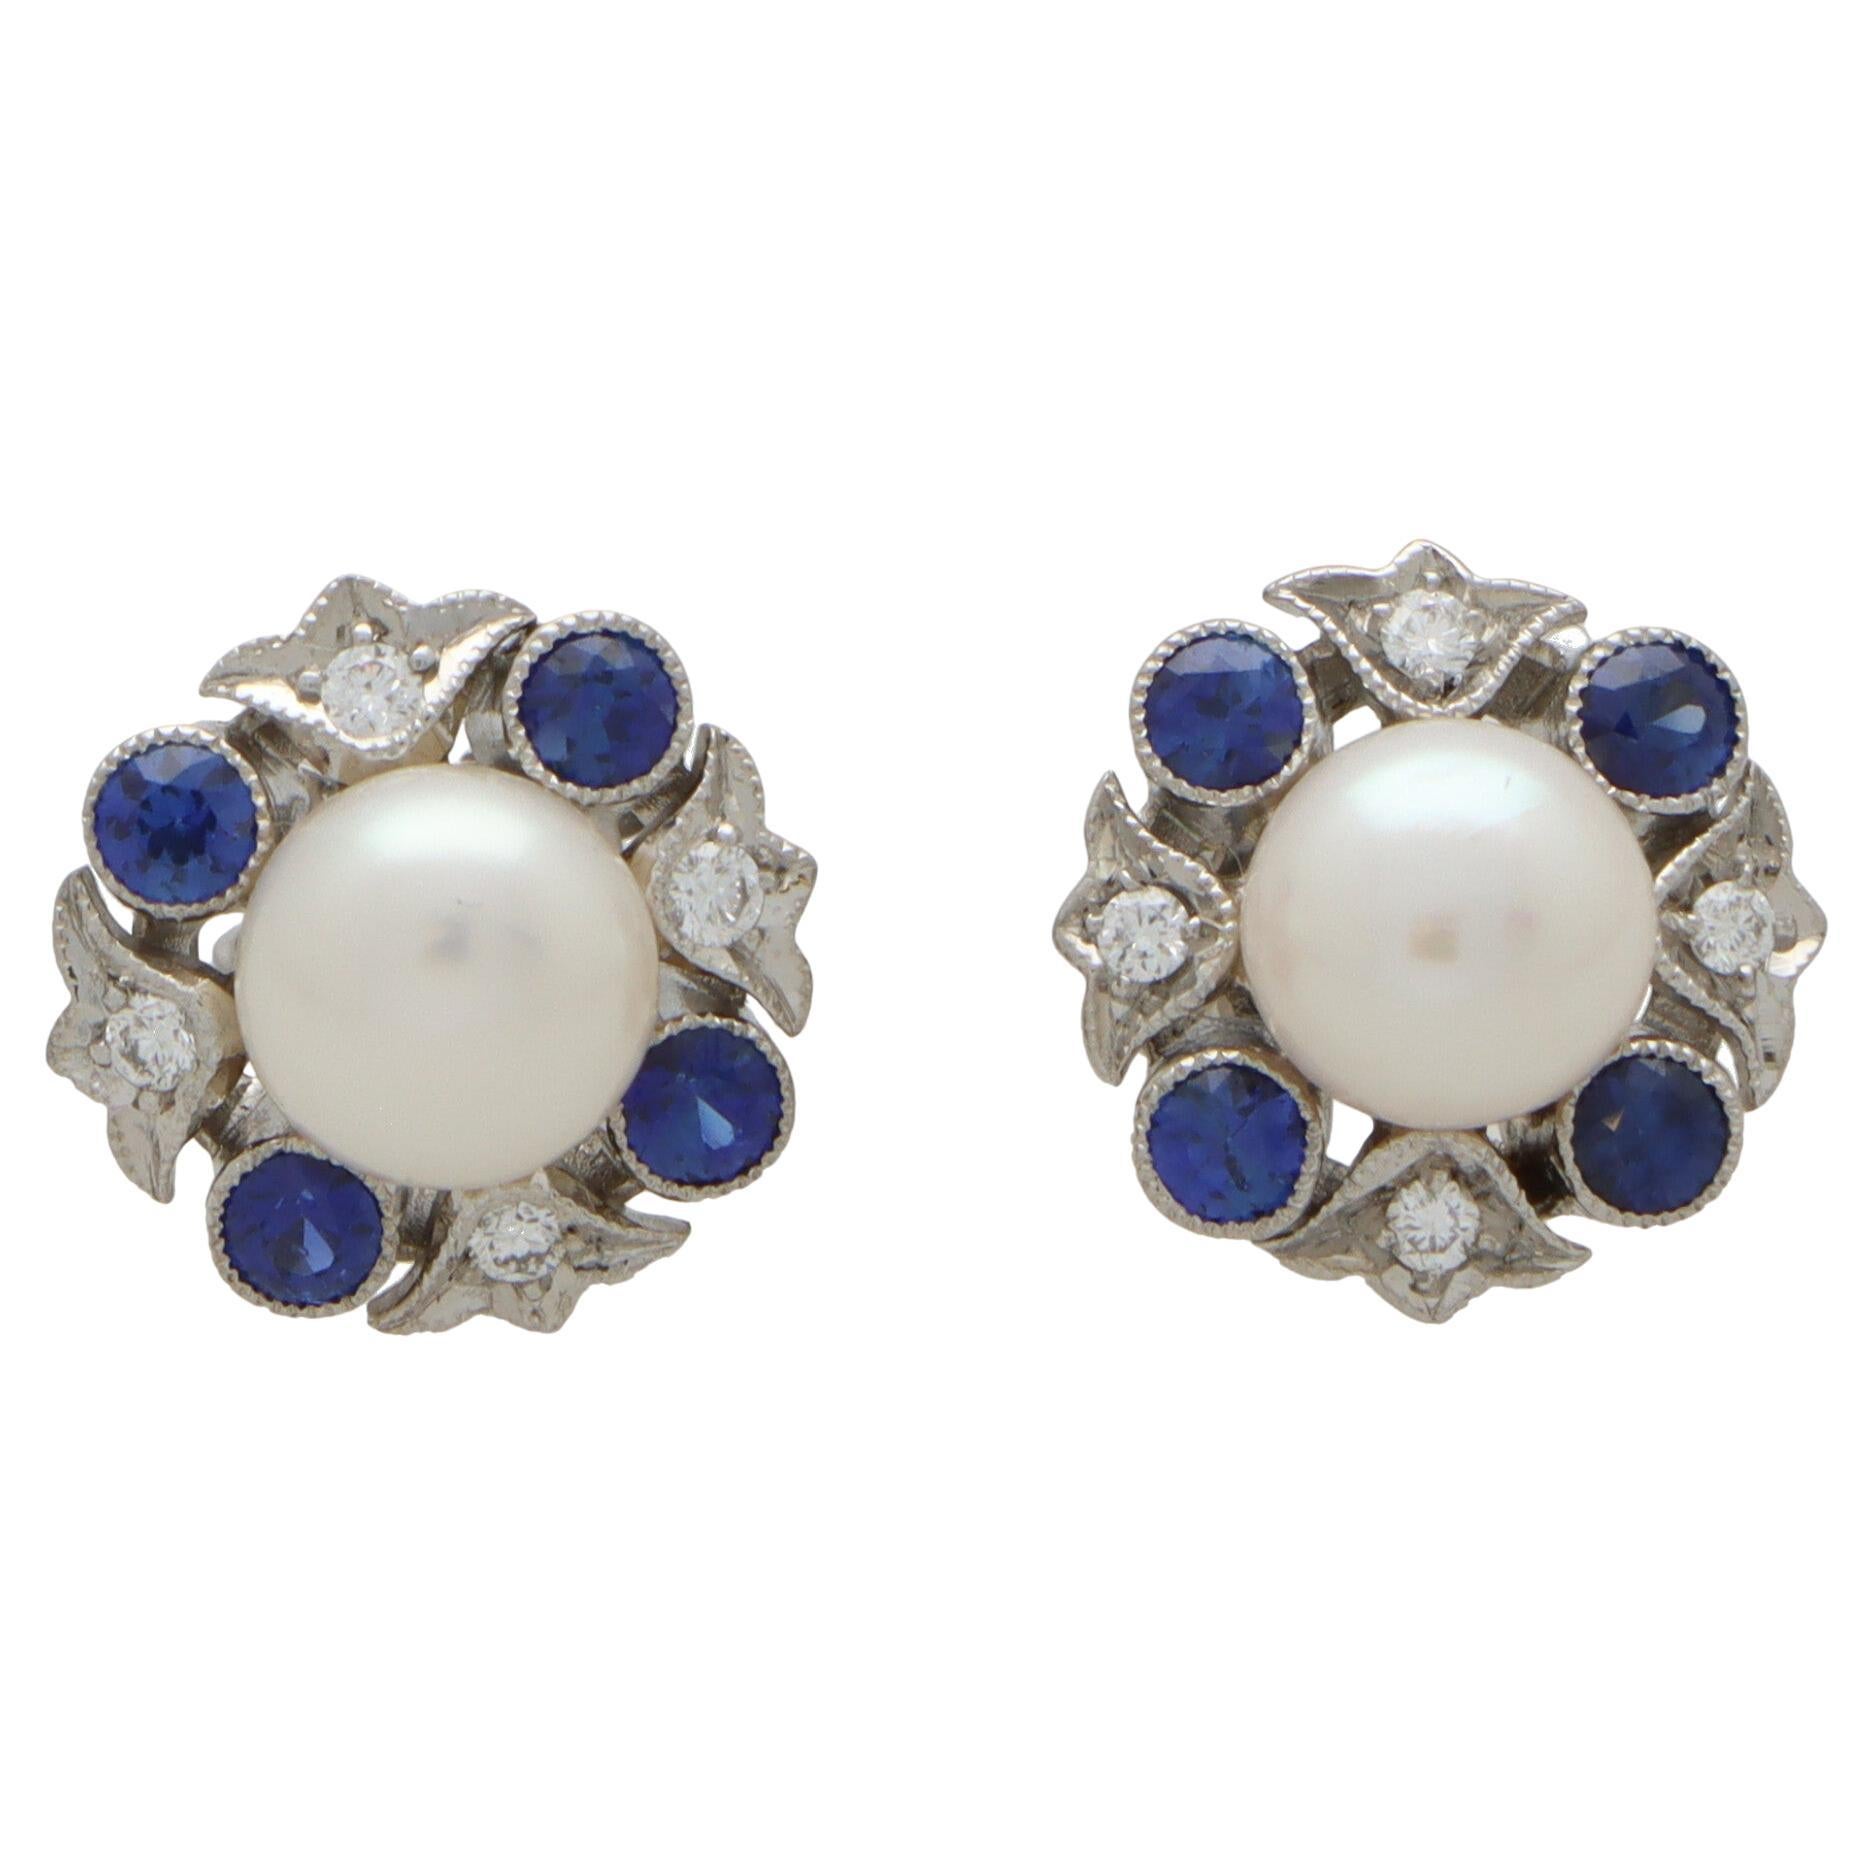 Boucles d'oreilles en or blanc 18 carats avec grappe de saphirs bleus, diamants et perles